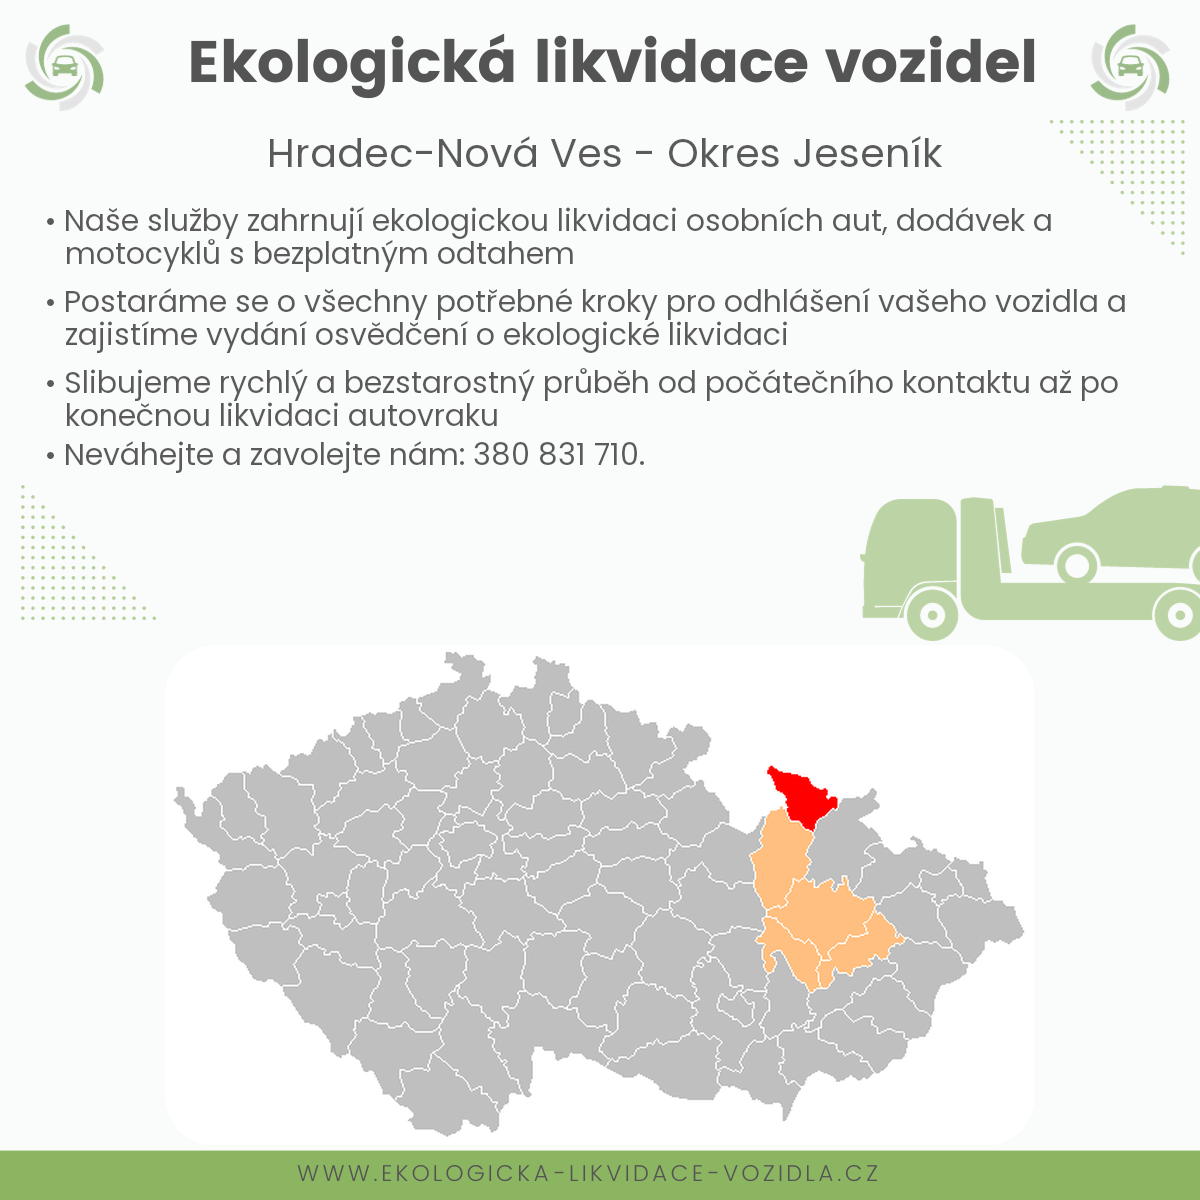 likvidace vozidel - Hradec-Nová Ves